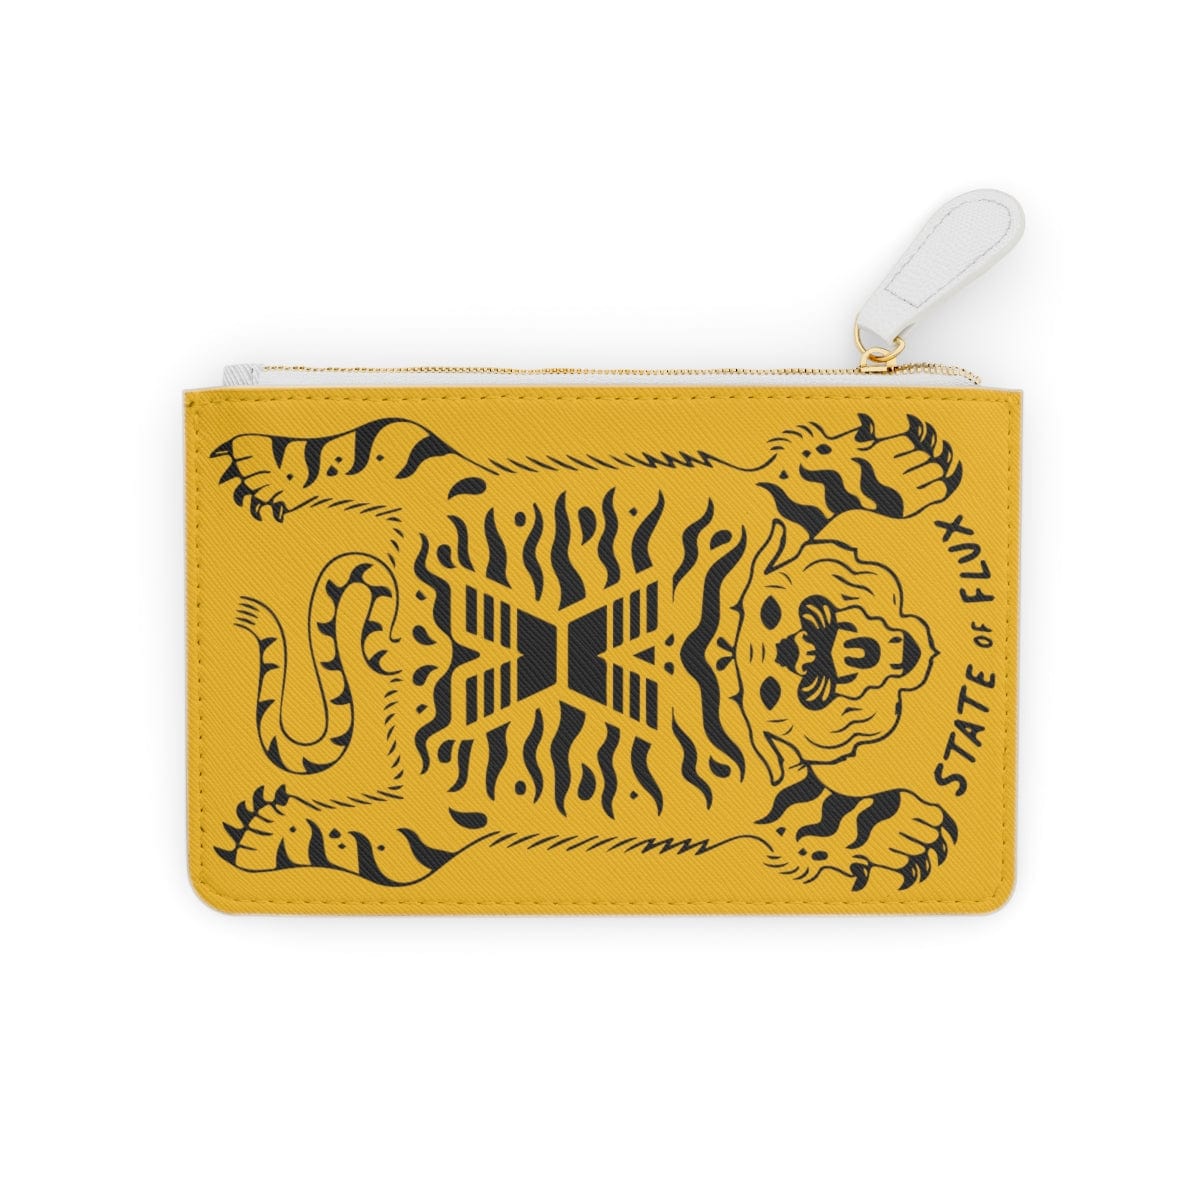 Tiger Island Wallet in mustard